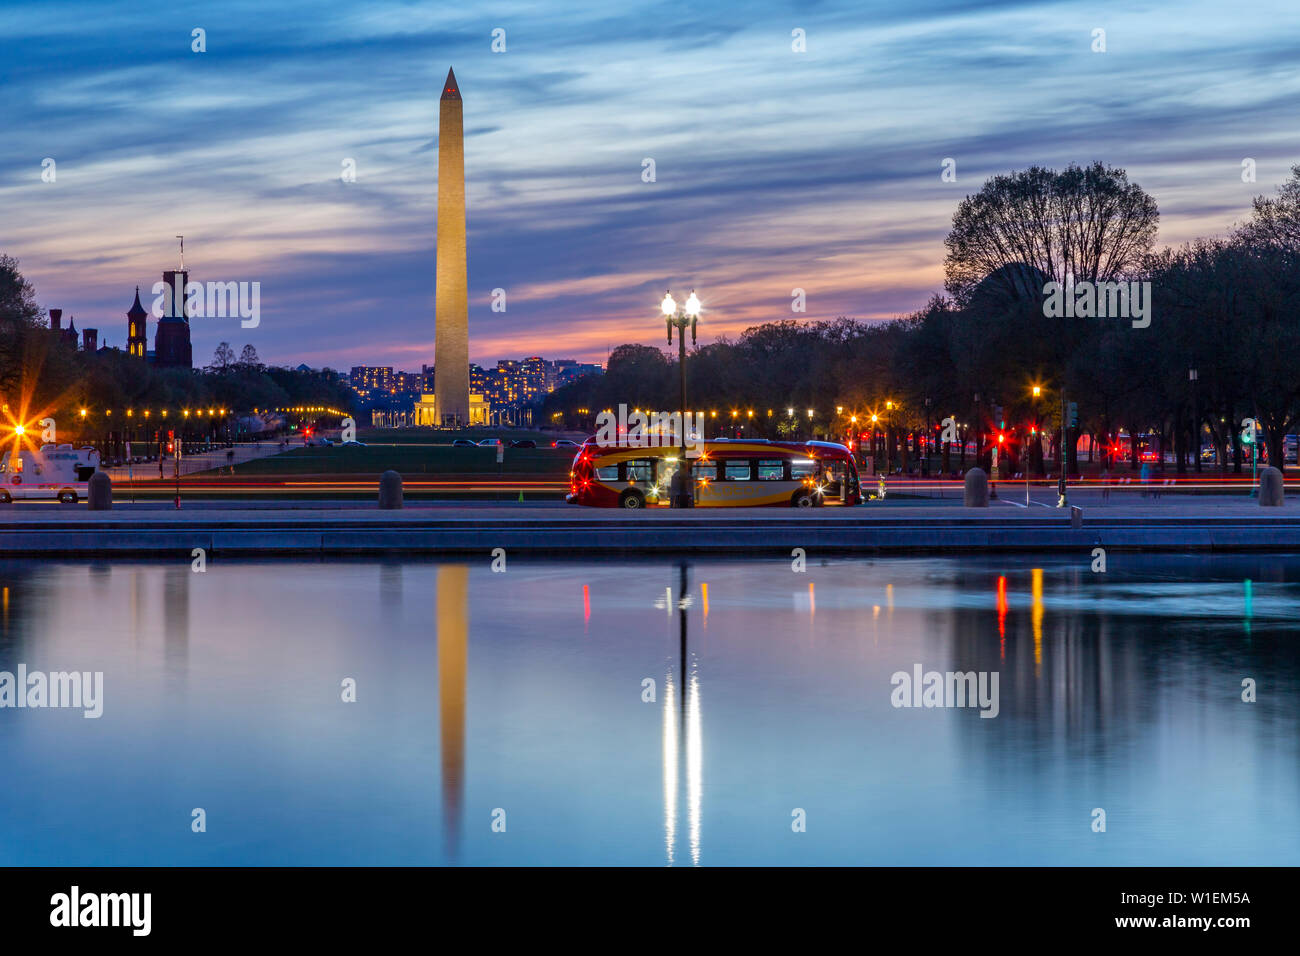 Vista del Monumento a Washington y el National Mall al atardecer, Washington D.C., Estados Unidos de América, América del Norte Foto de stock